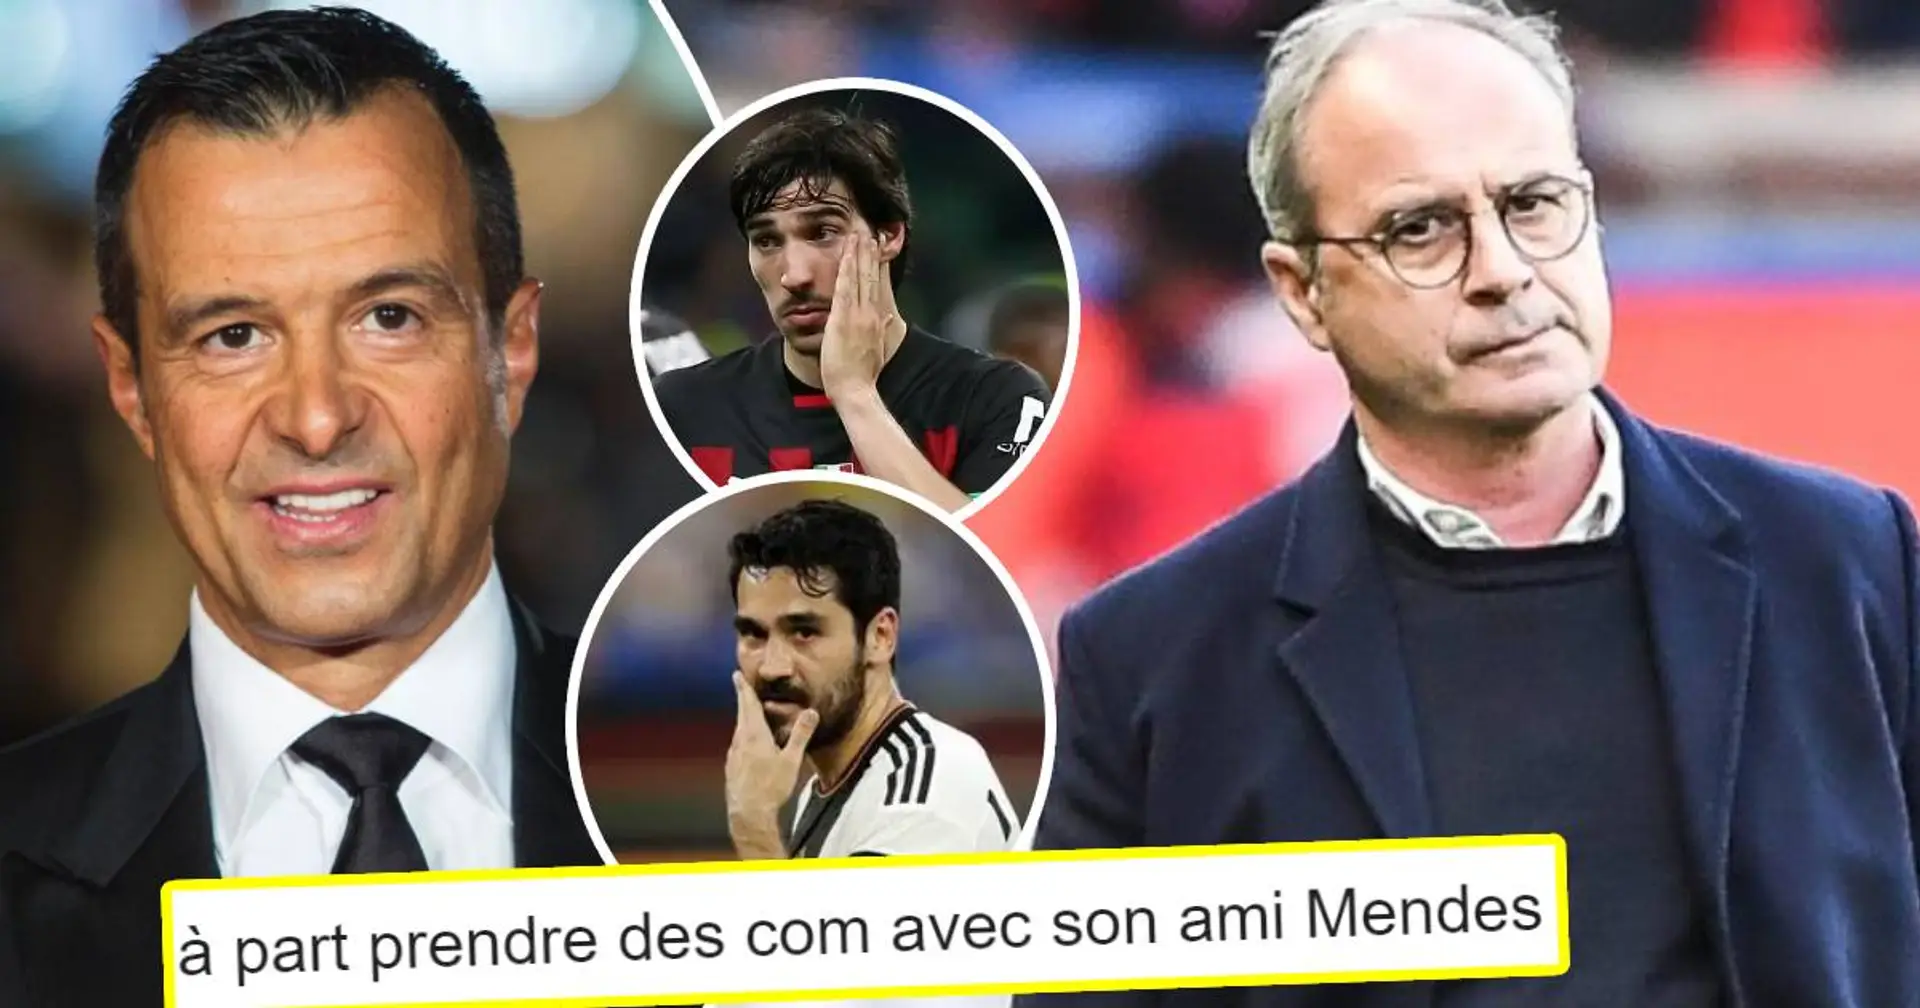 "A part enrichir son ami Mendes..." : Les fans du PSG déçus de voir leur club passer devant des top joueurs